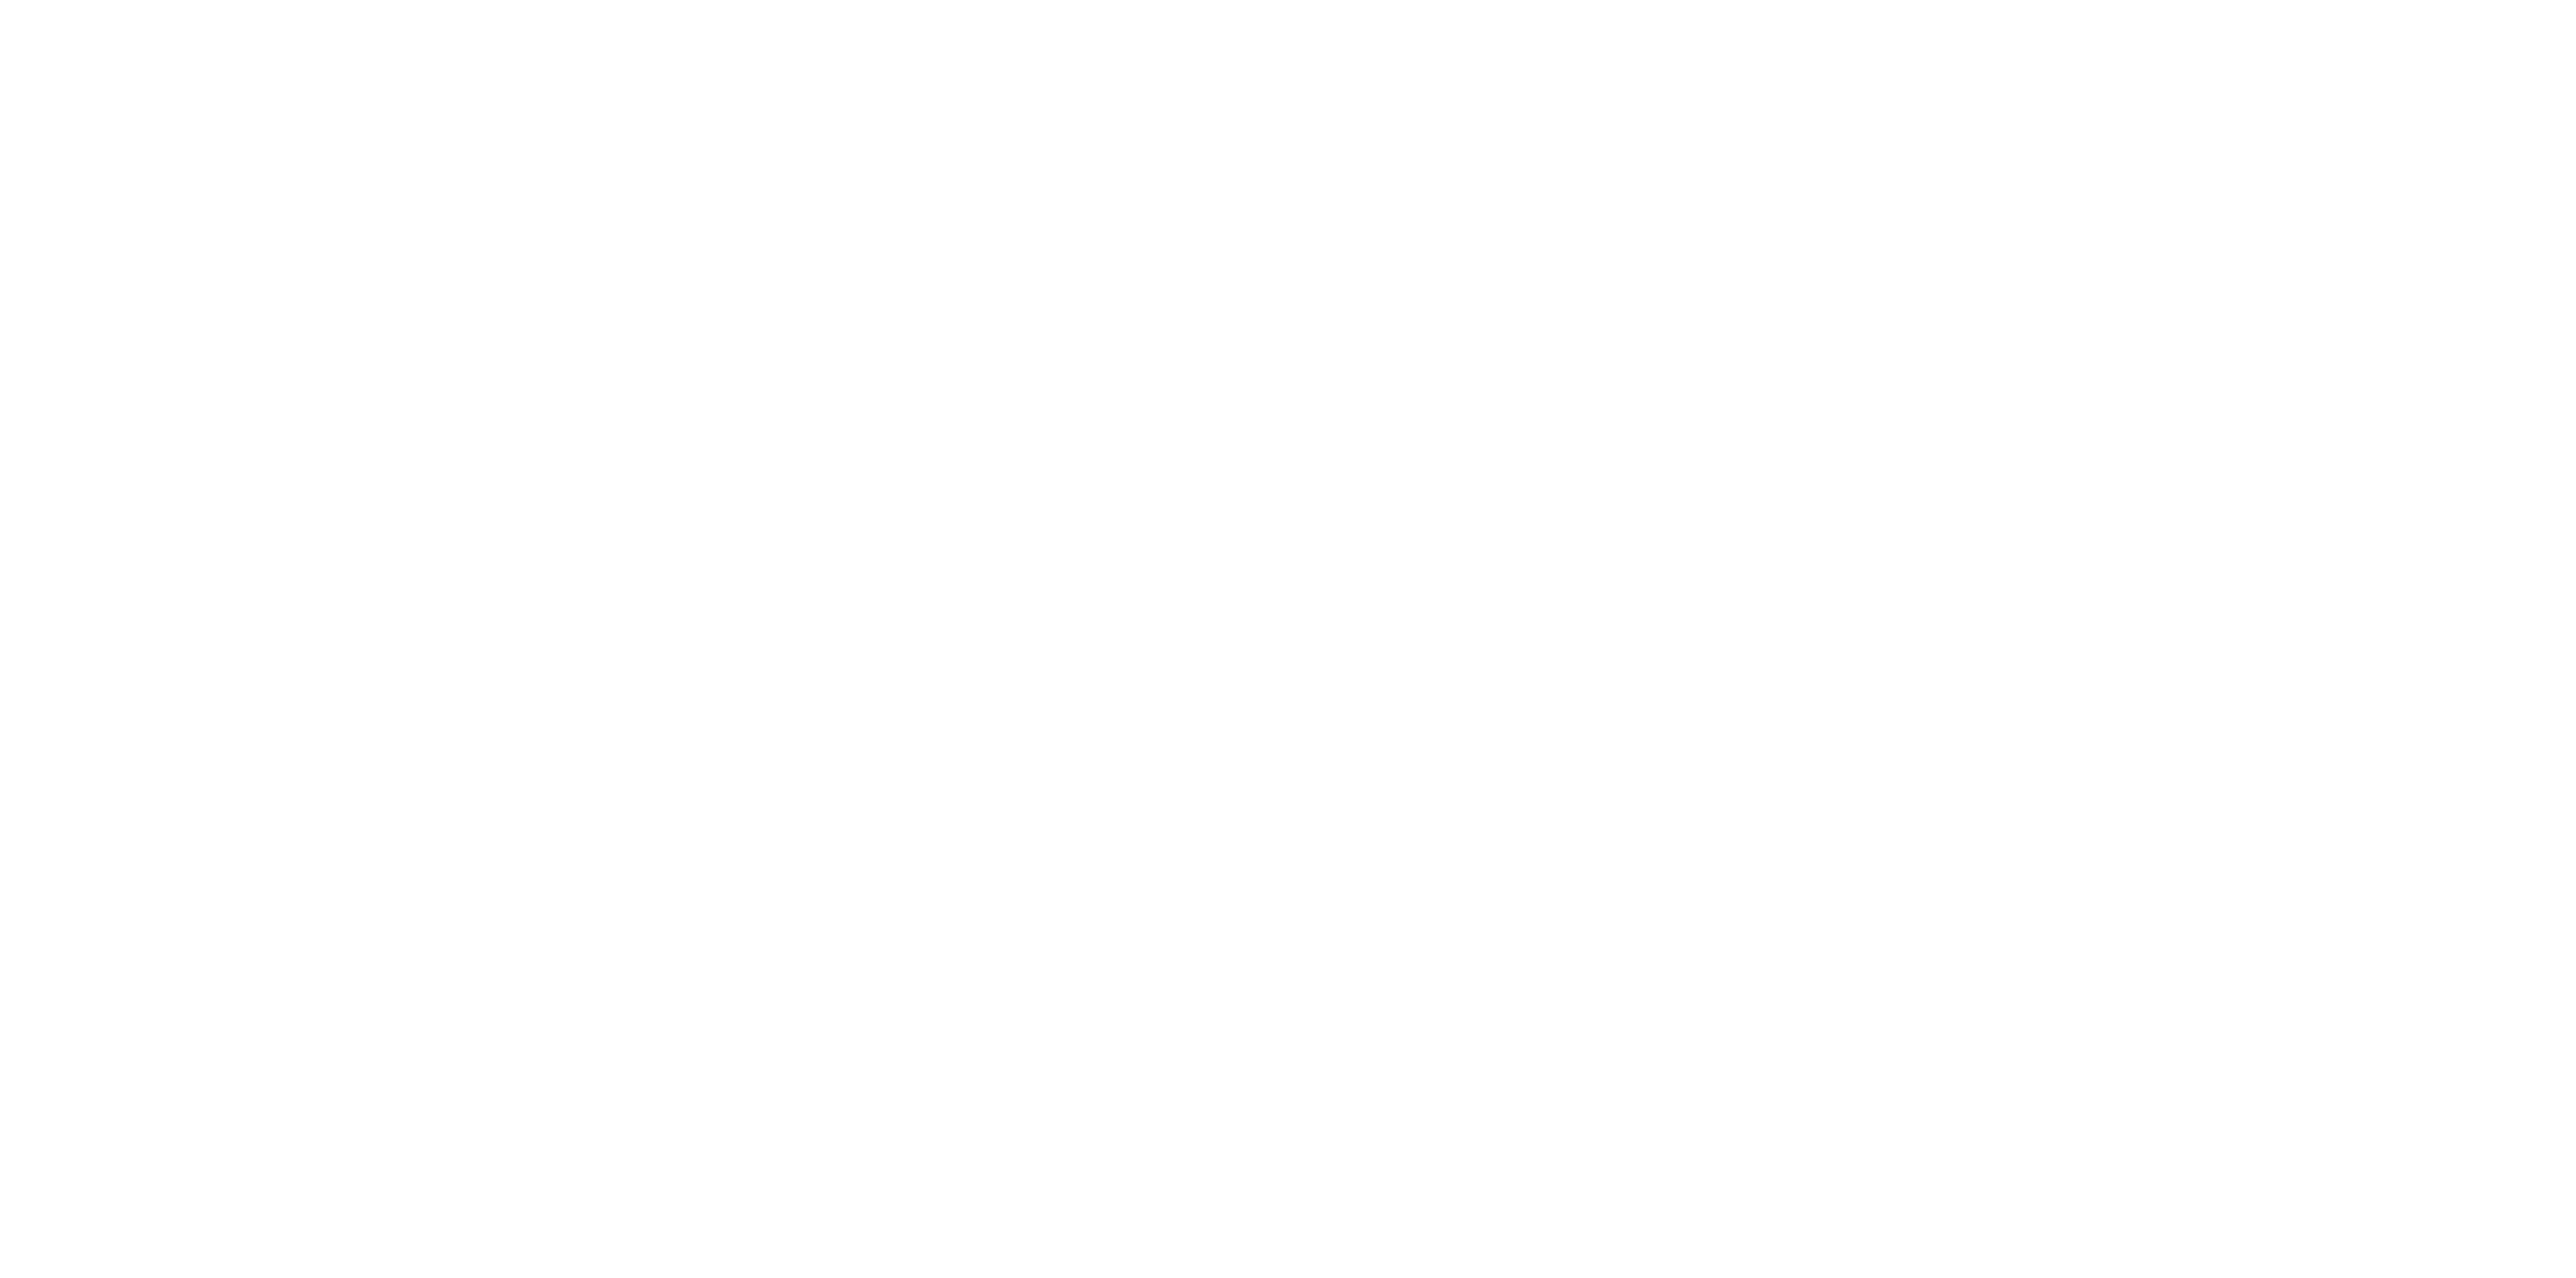 CAECV-Sello-Certificacion horizontal